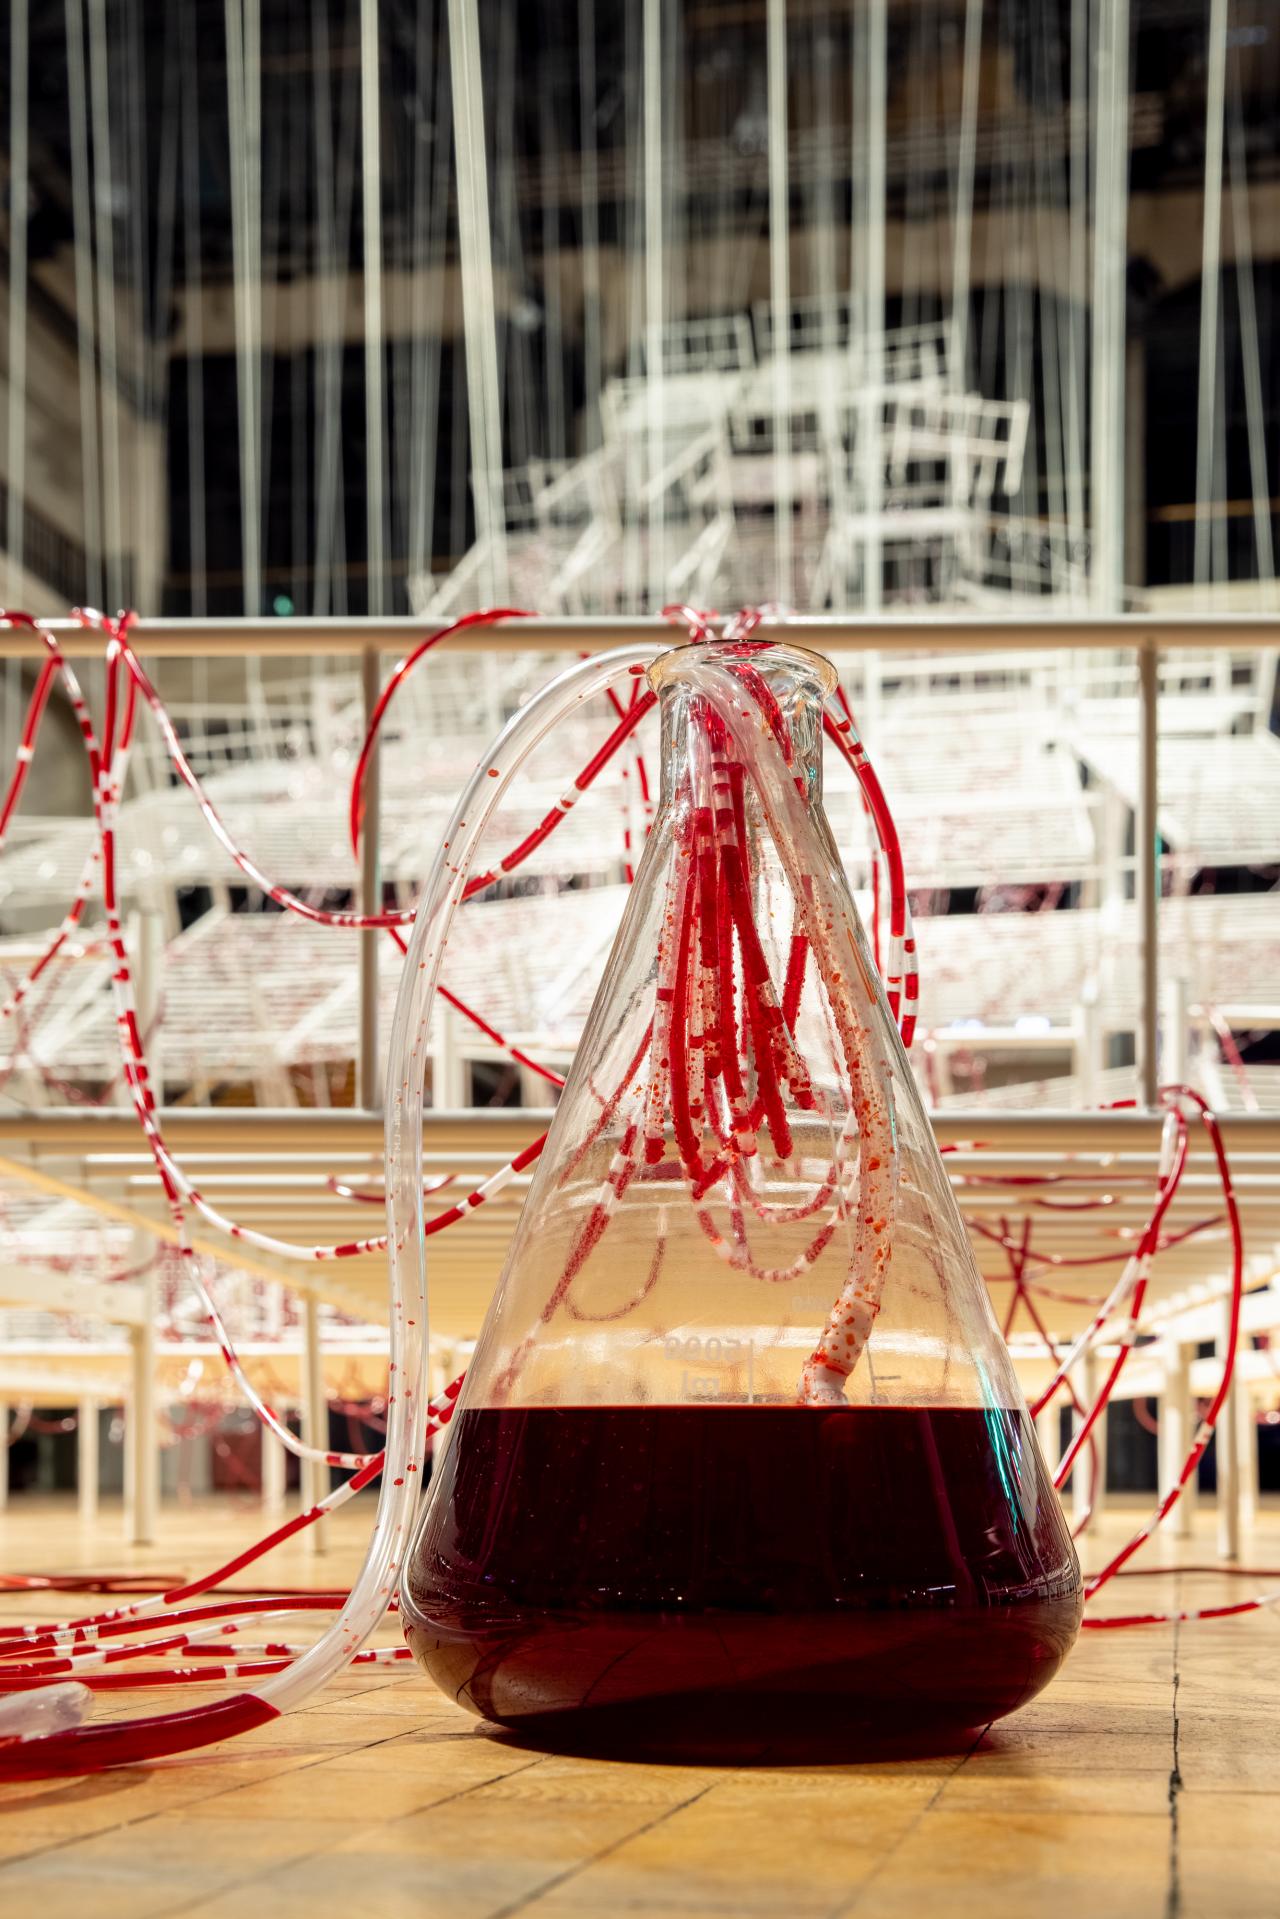 Ausschnitt von Chiharu Shiotas »Connected to Life«. Zu sehen ist ein gläserner, trichterförmiger Behälter, gefüllt mit roter Flüssigkeit und aus ihm herausragenden Schläuchen.